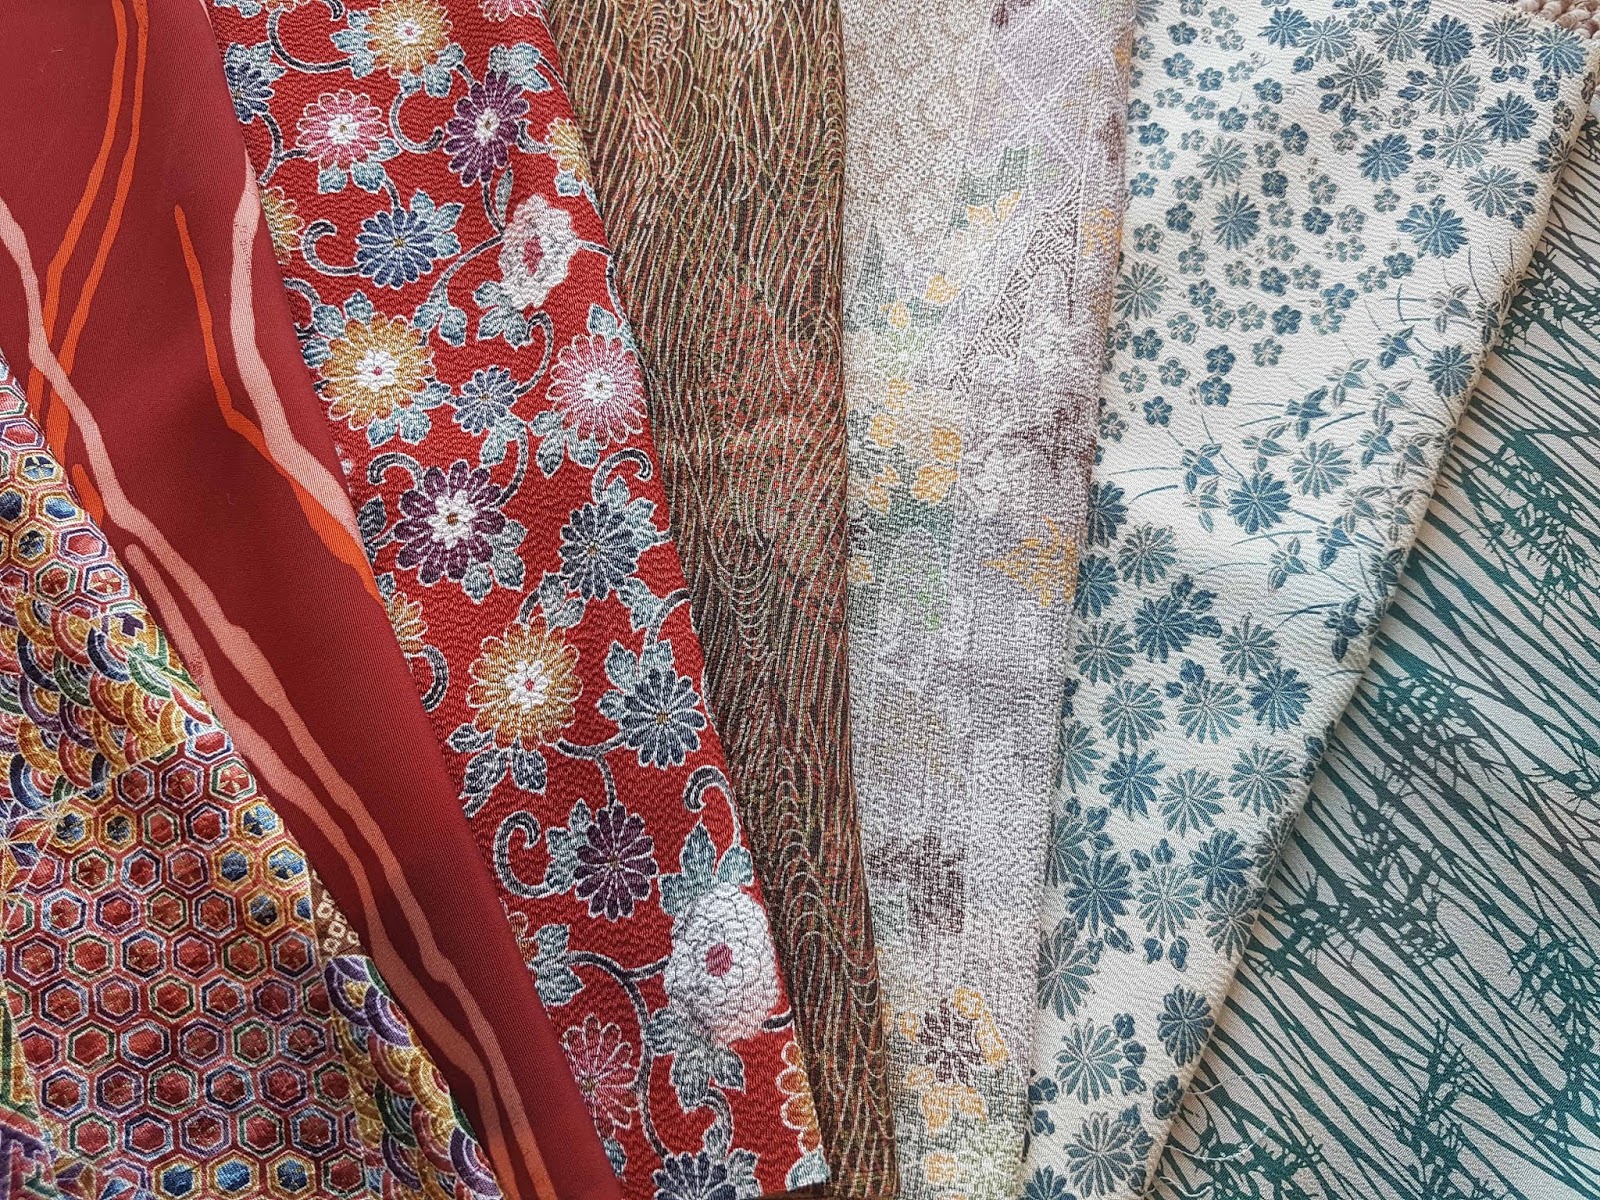 Kimono Purse kinchaku Bag Japanese Vintage Small